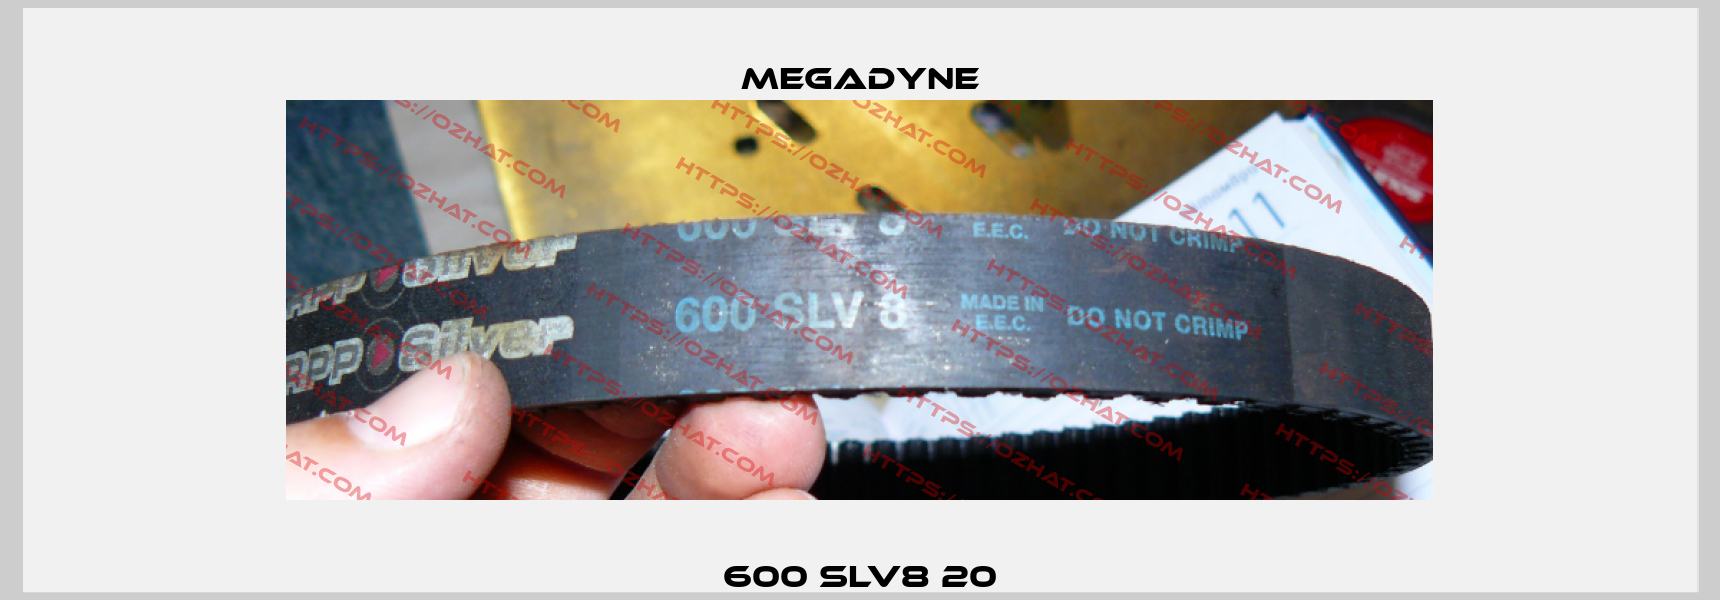 600 SLV8 20 Megadyne